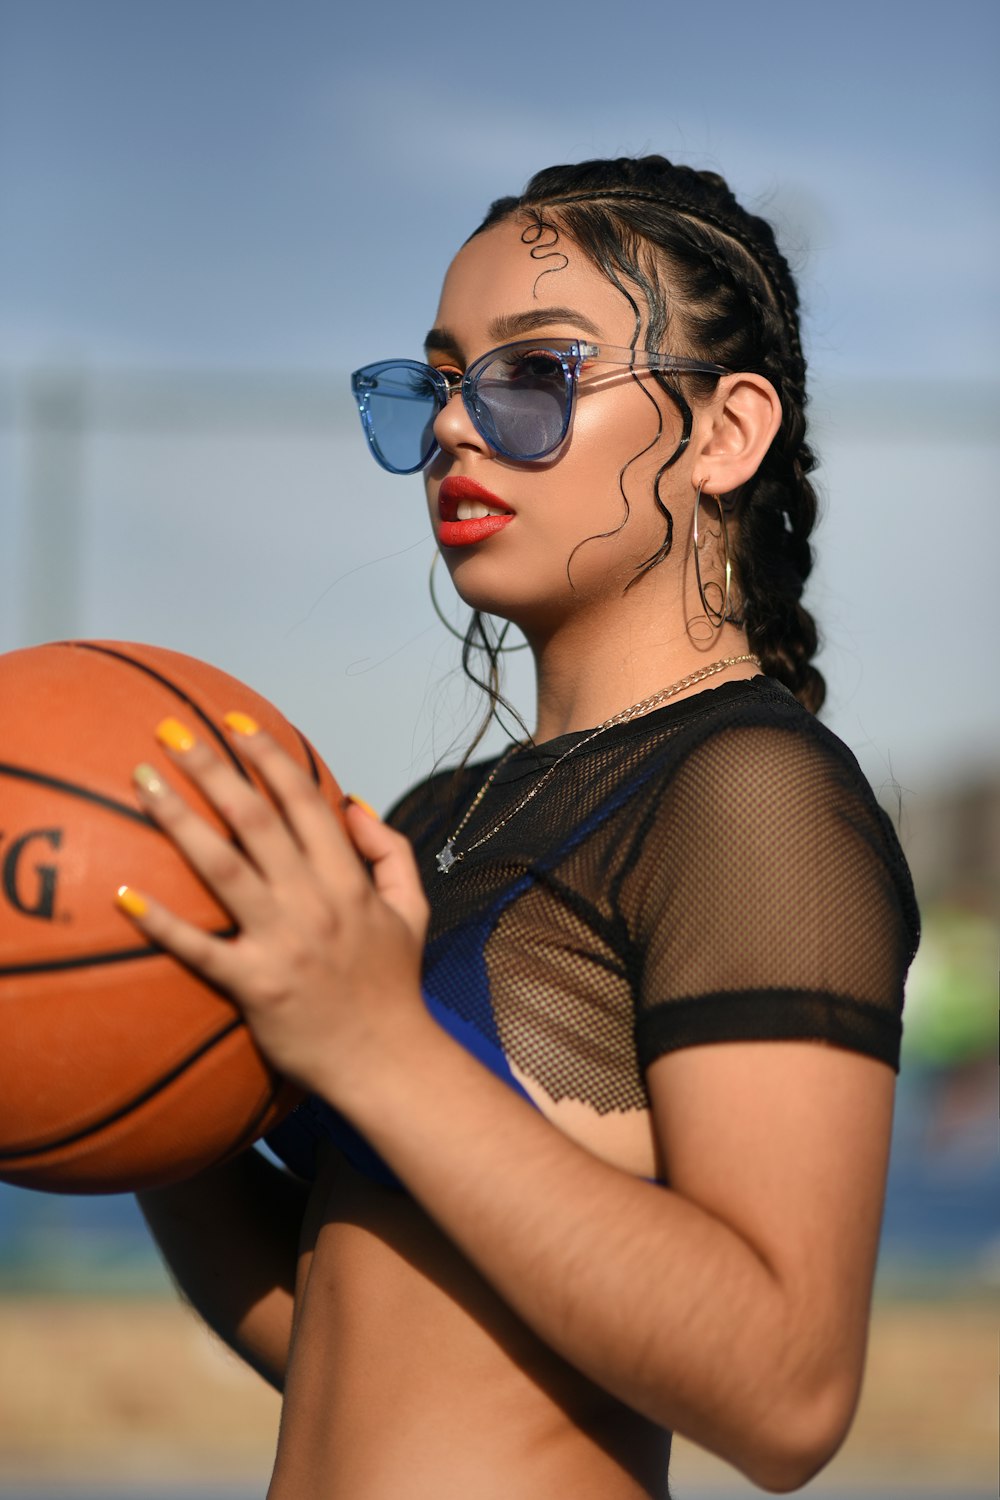 donna in maglia nera crop top che tiene pallacanestro